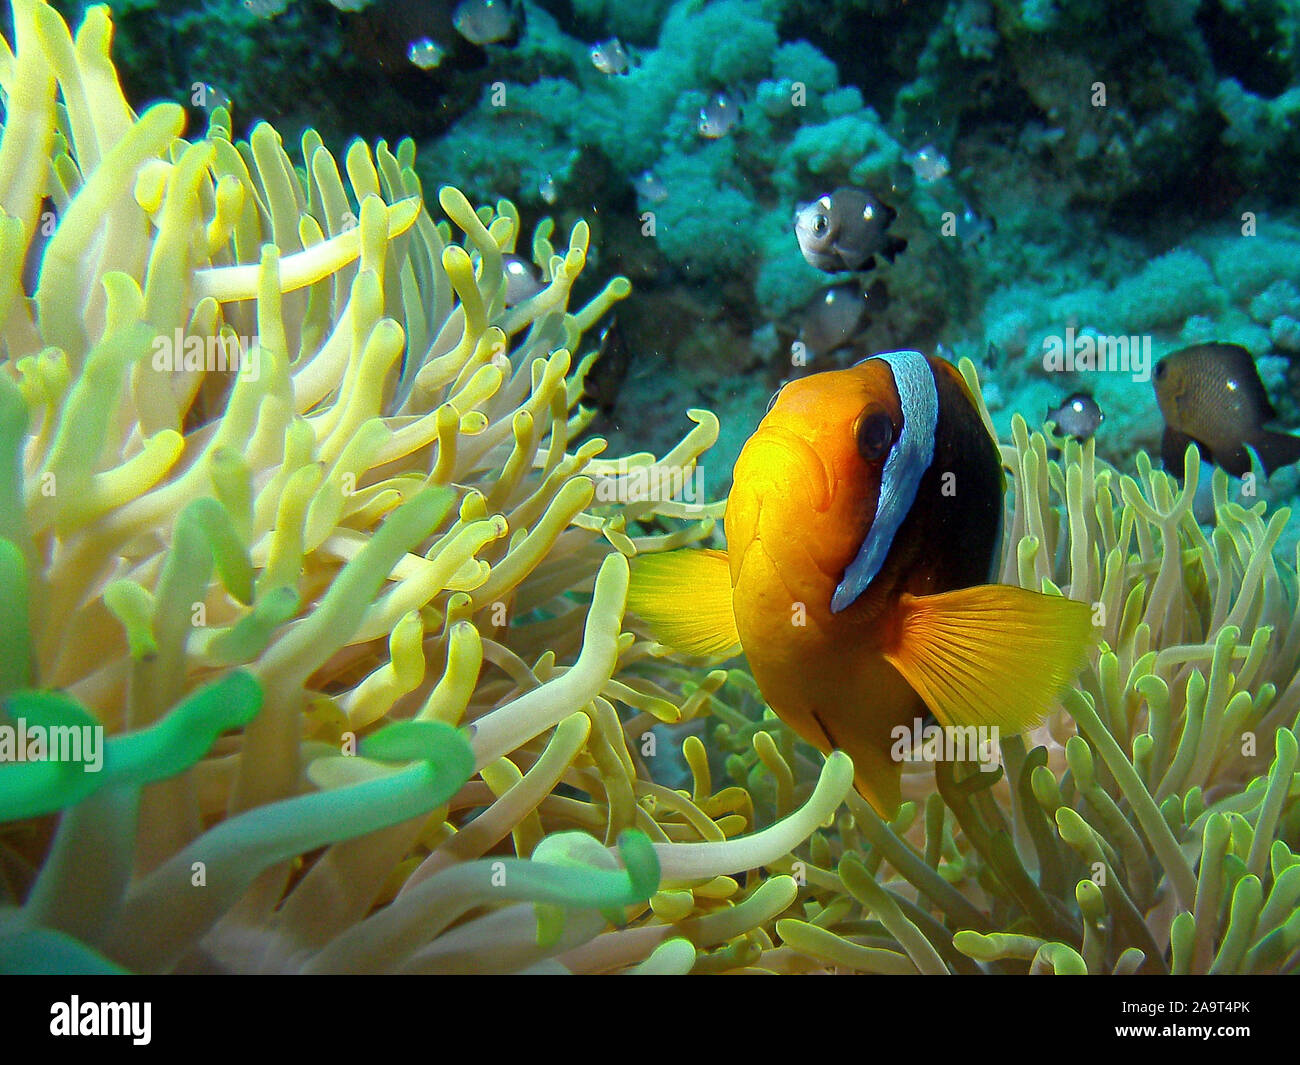 Amphiprion bicinctus Rotmeer-Anemonenfisch / / / / Anemonenfisch Clownfisch Nemo en cerquero Wirtanemone / / / Seeanemone Symbioseanemone anémona en ein Foto de stock